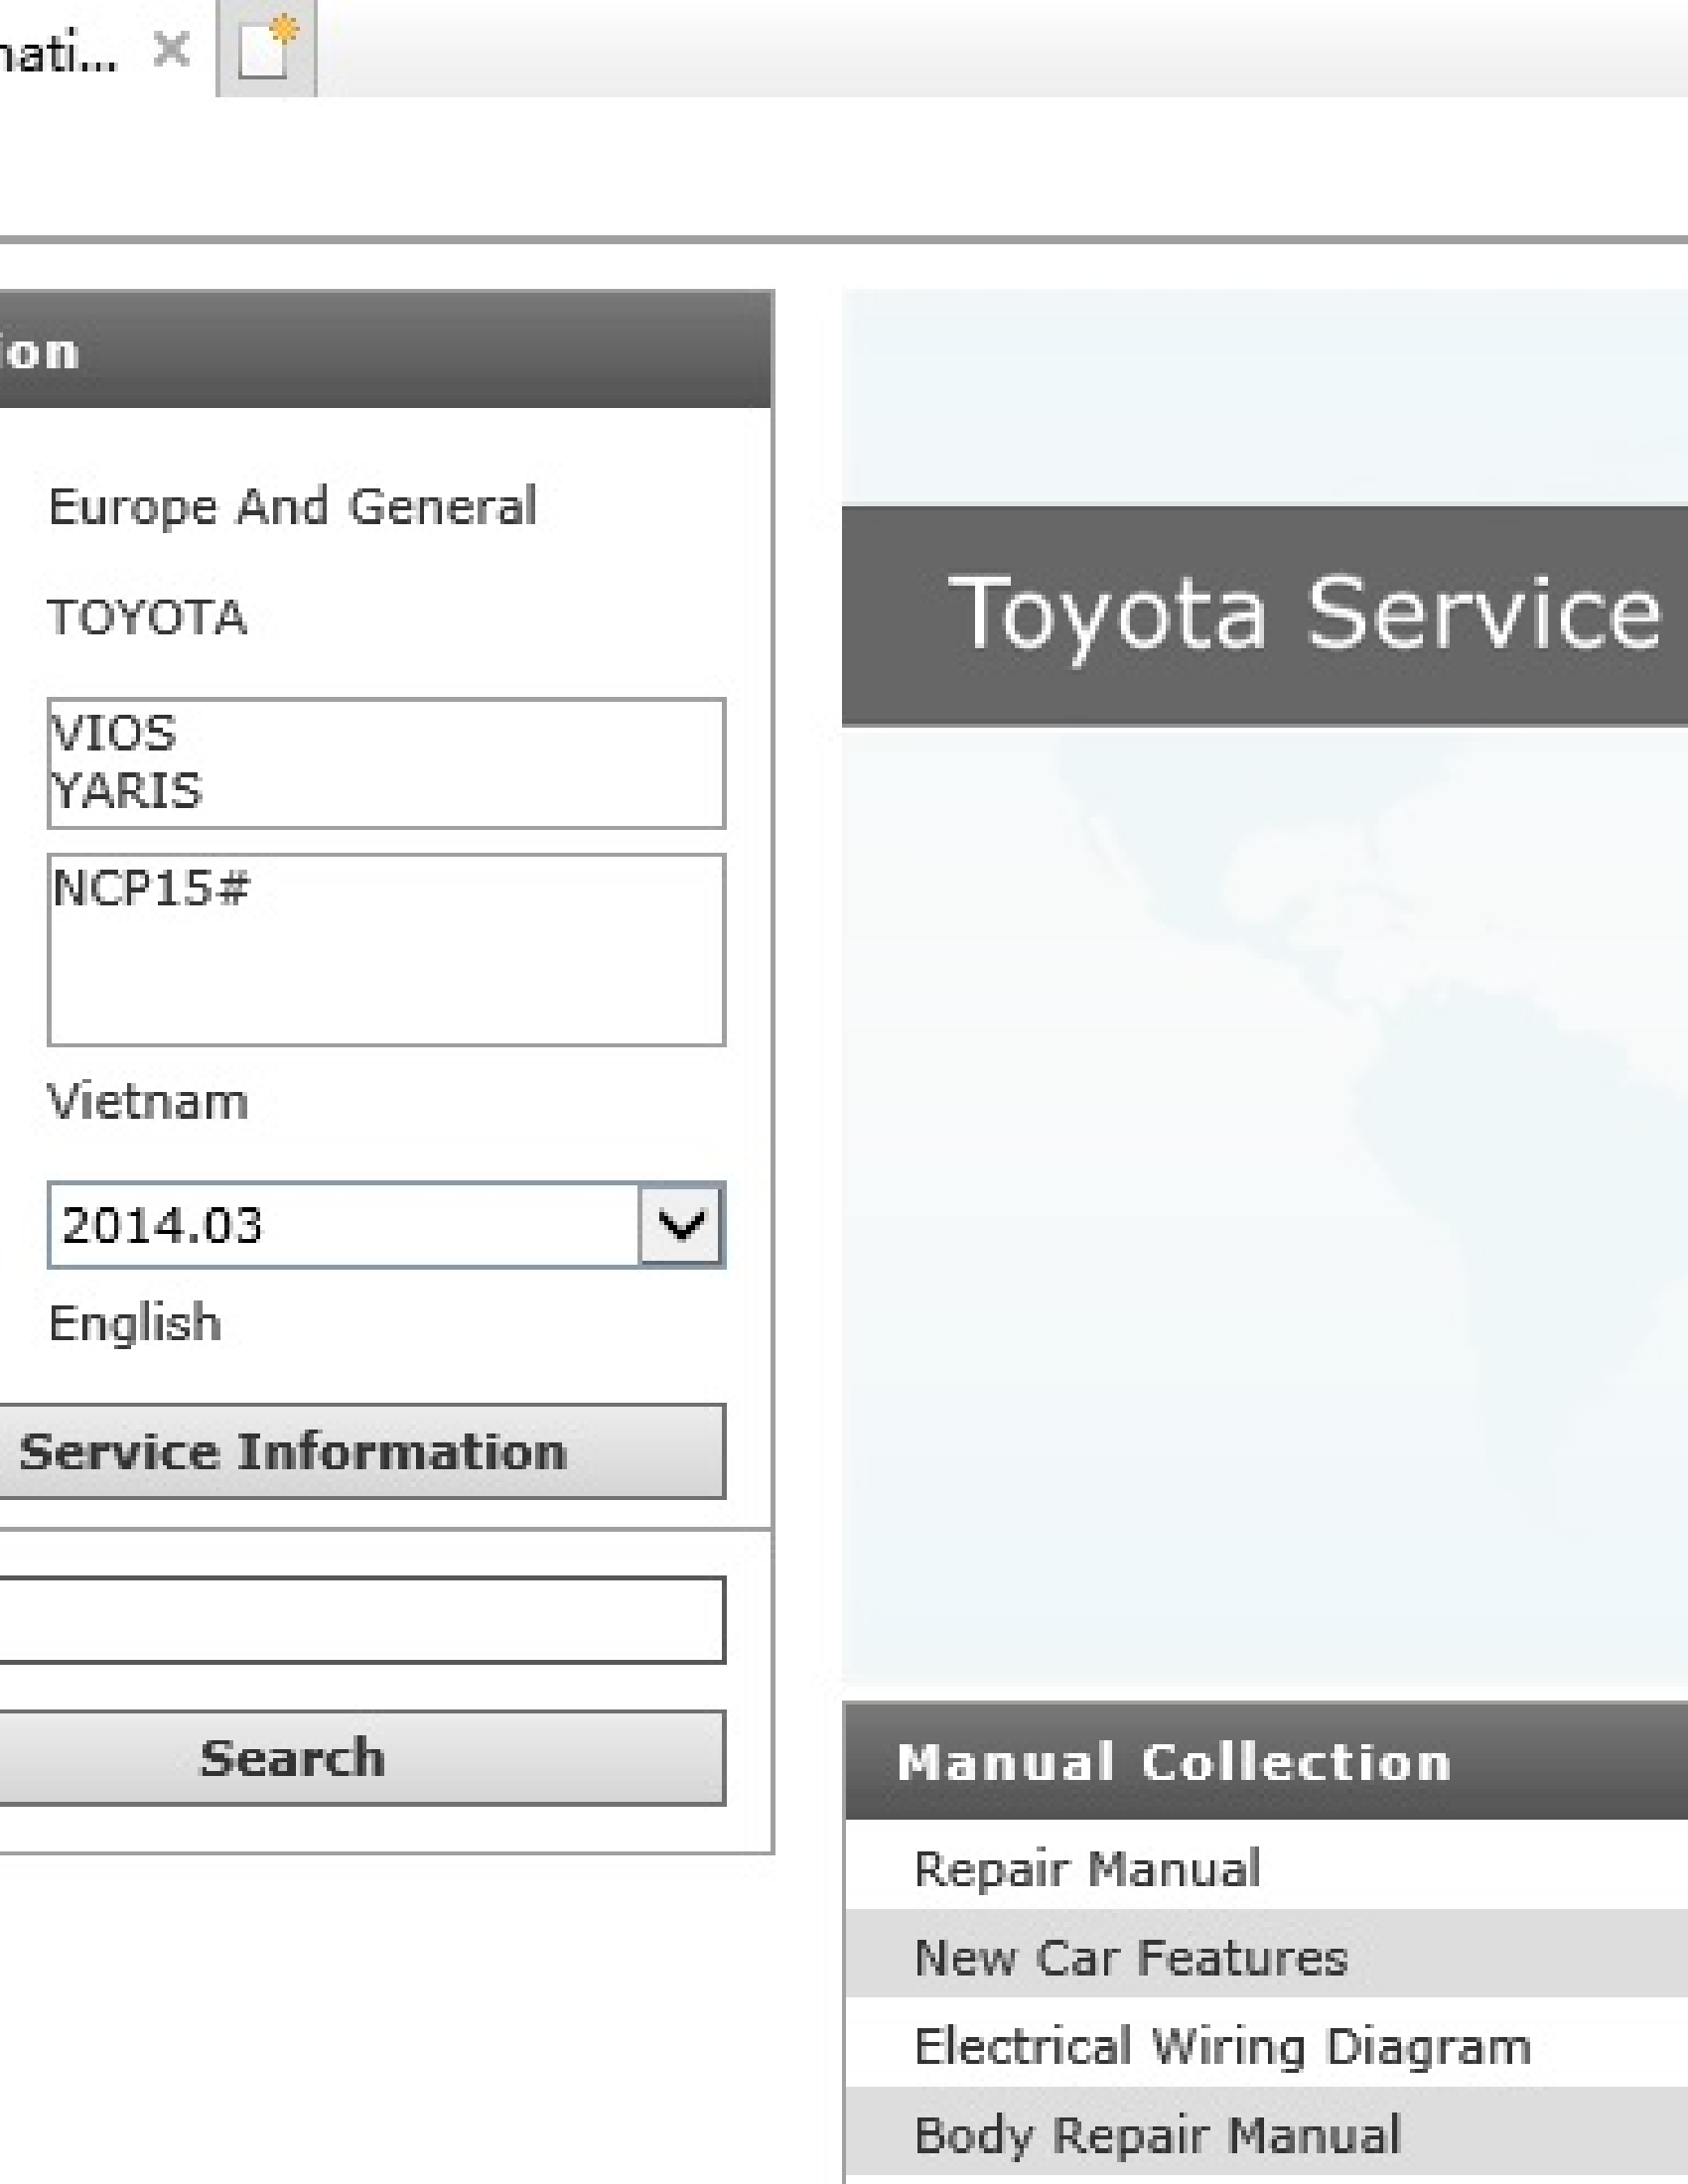 Toyota (NCP15#) VIOS YARIS manual